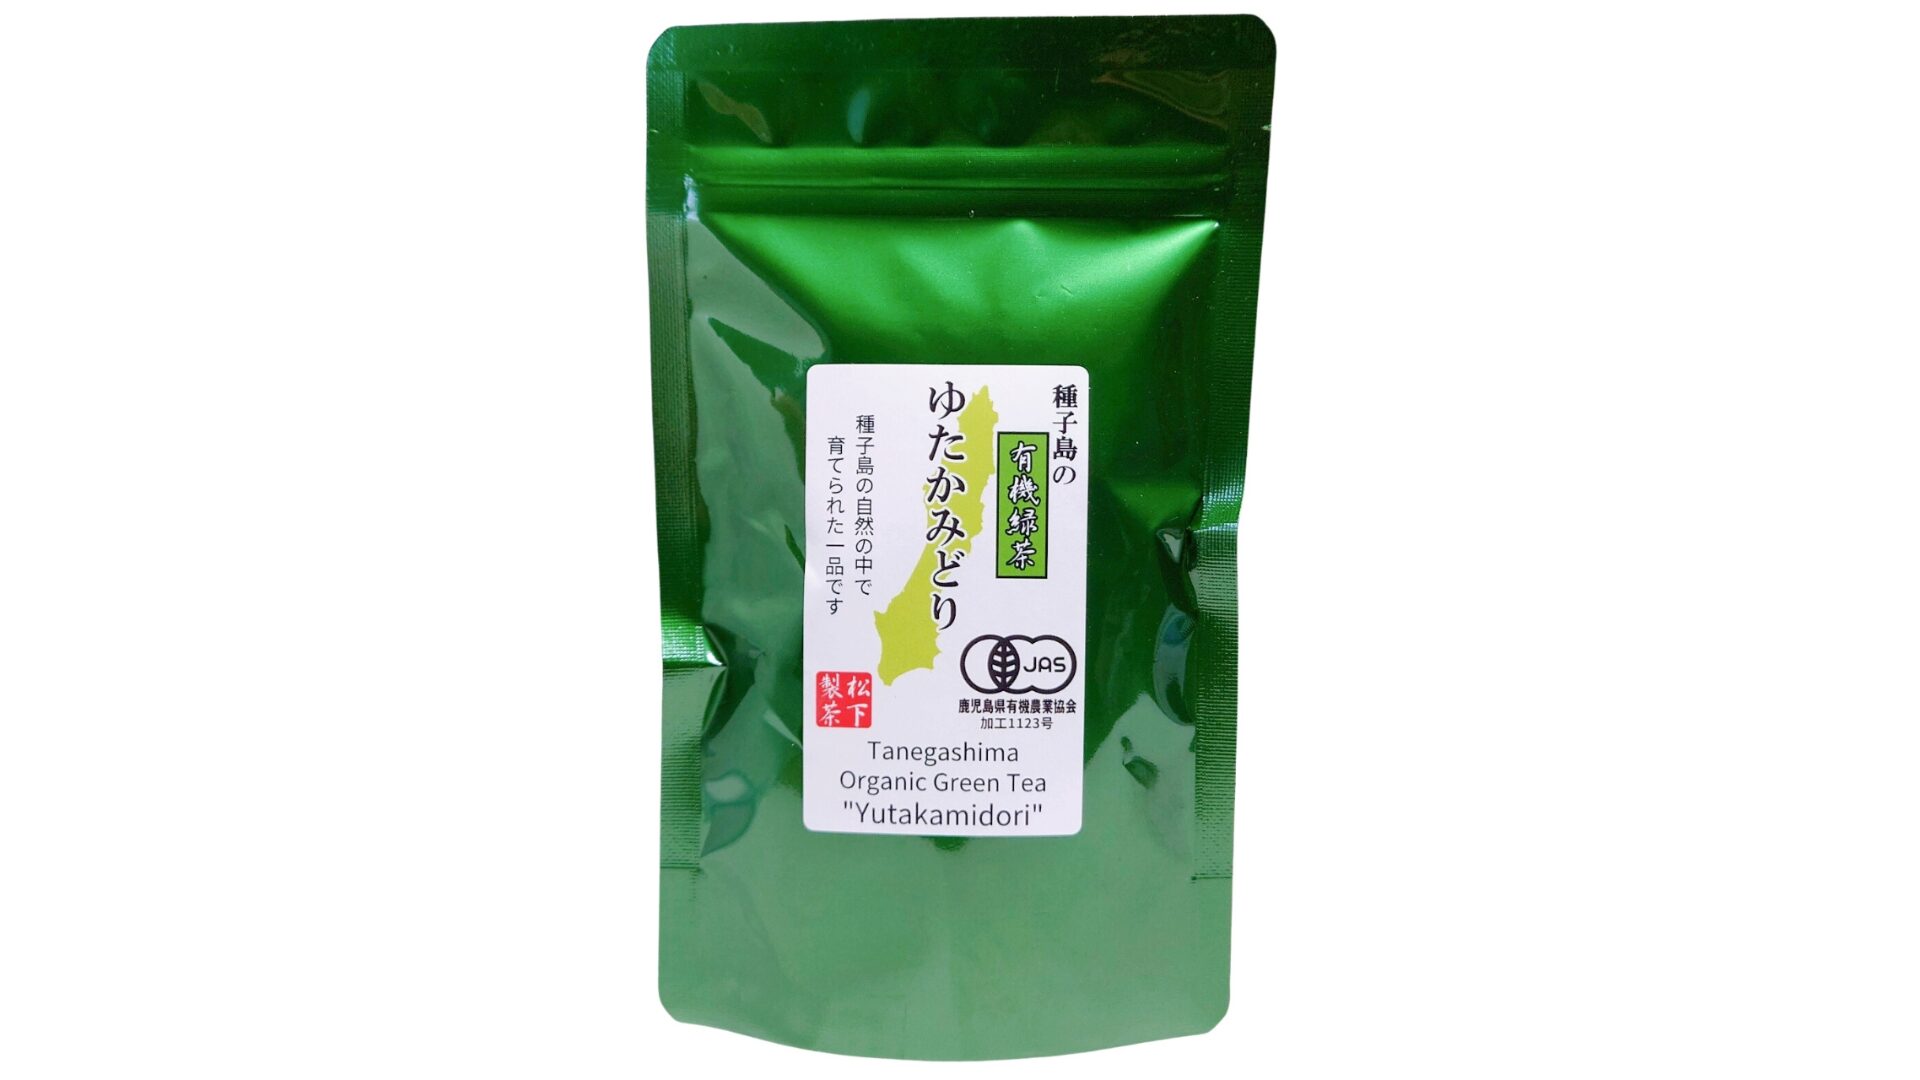 松下製茶 種子島の有機緑茶『ゆたかみどり』 茶葉(リーフ) 100g